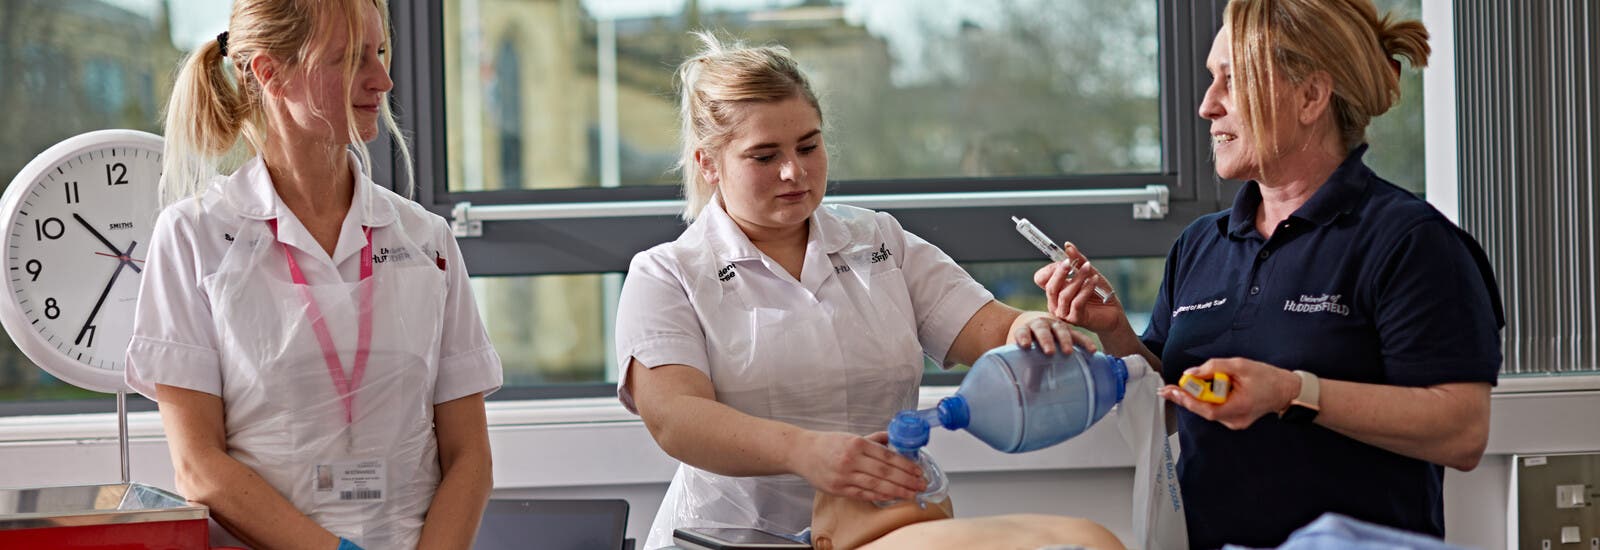 Huddersfield ISC nursing students